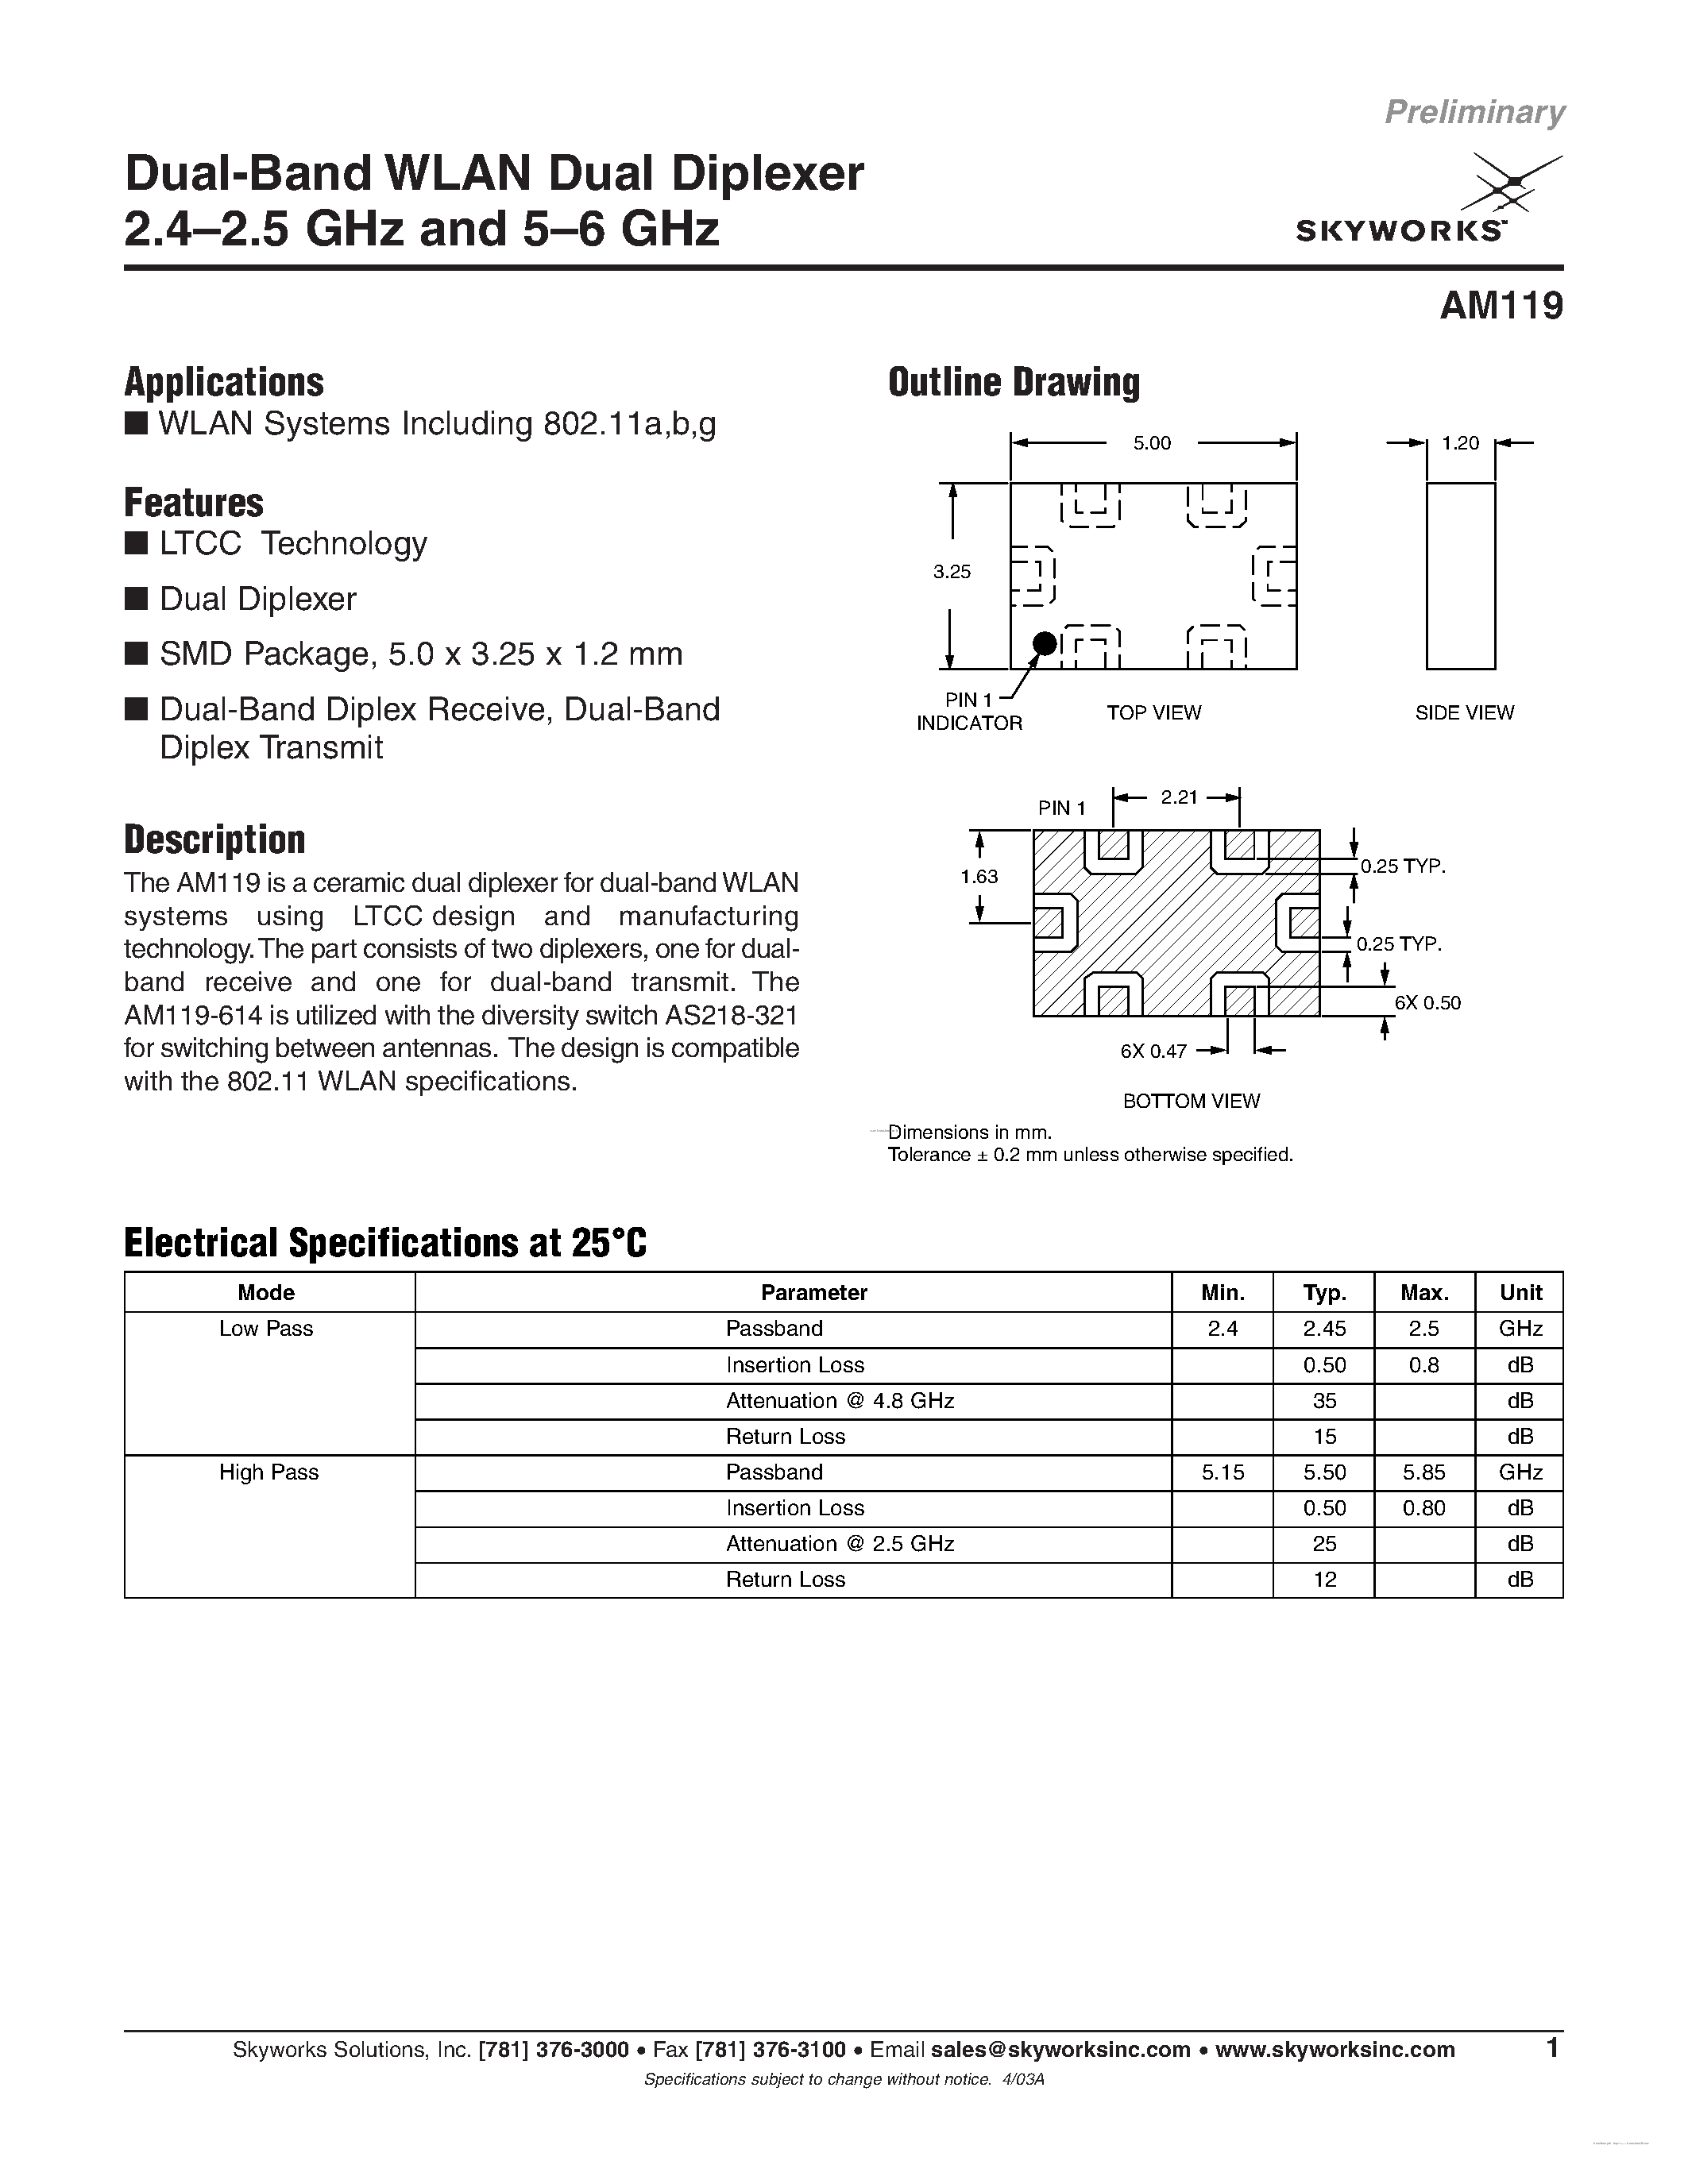 Datasheet AM119 - Dual-Band WLAN Dual Diplexer page 1